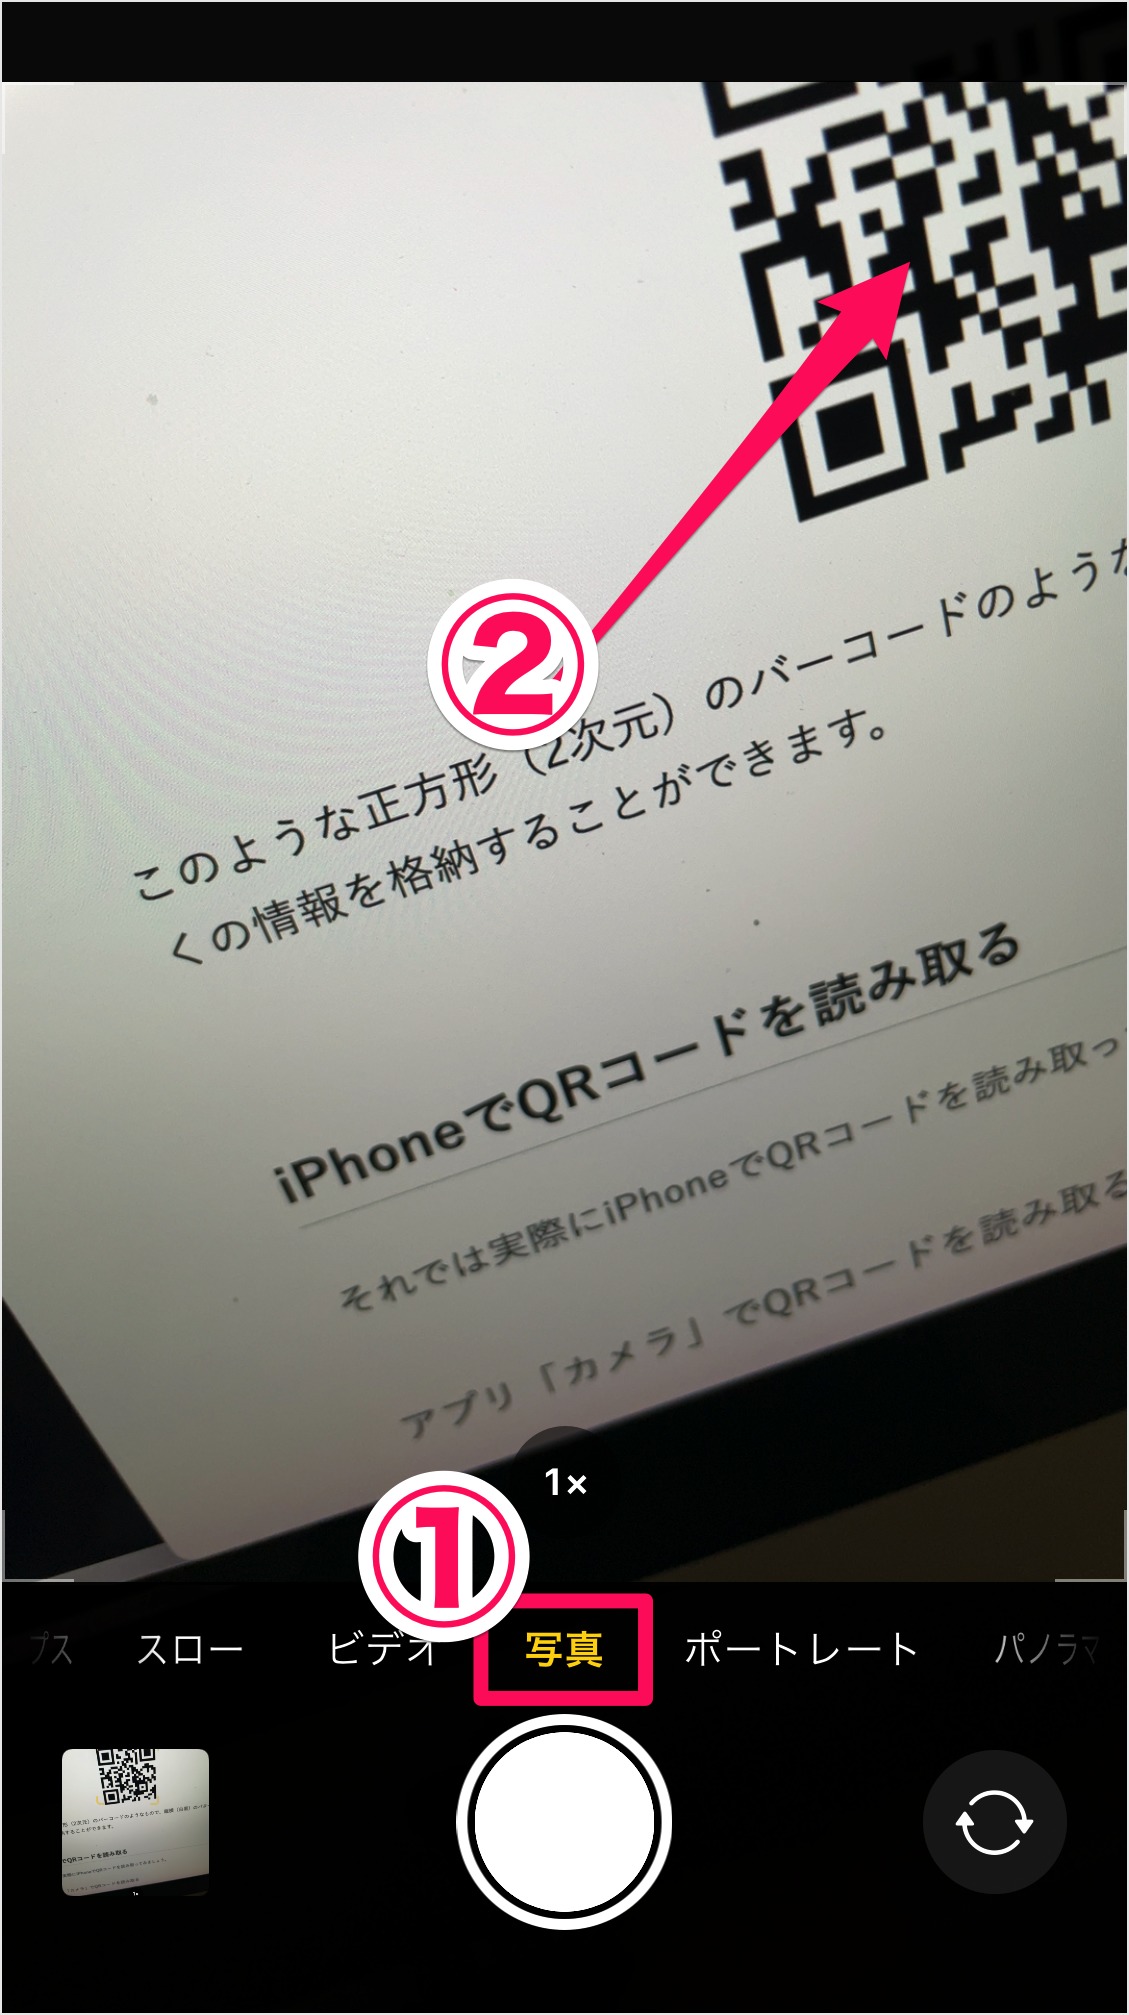 Qrコードを読み取る方法 Iphone Android スマホ Pc設定のカルマ 2257